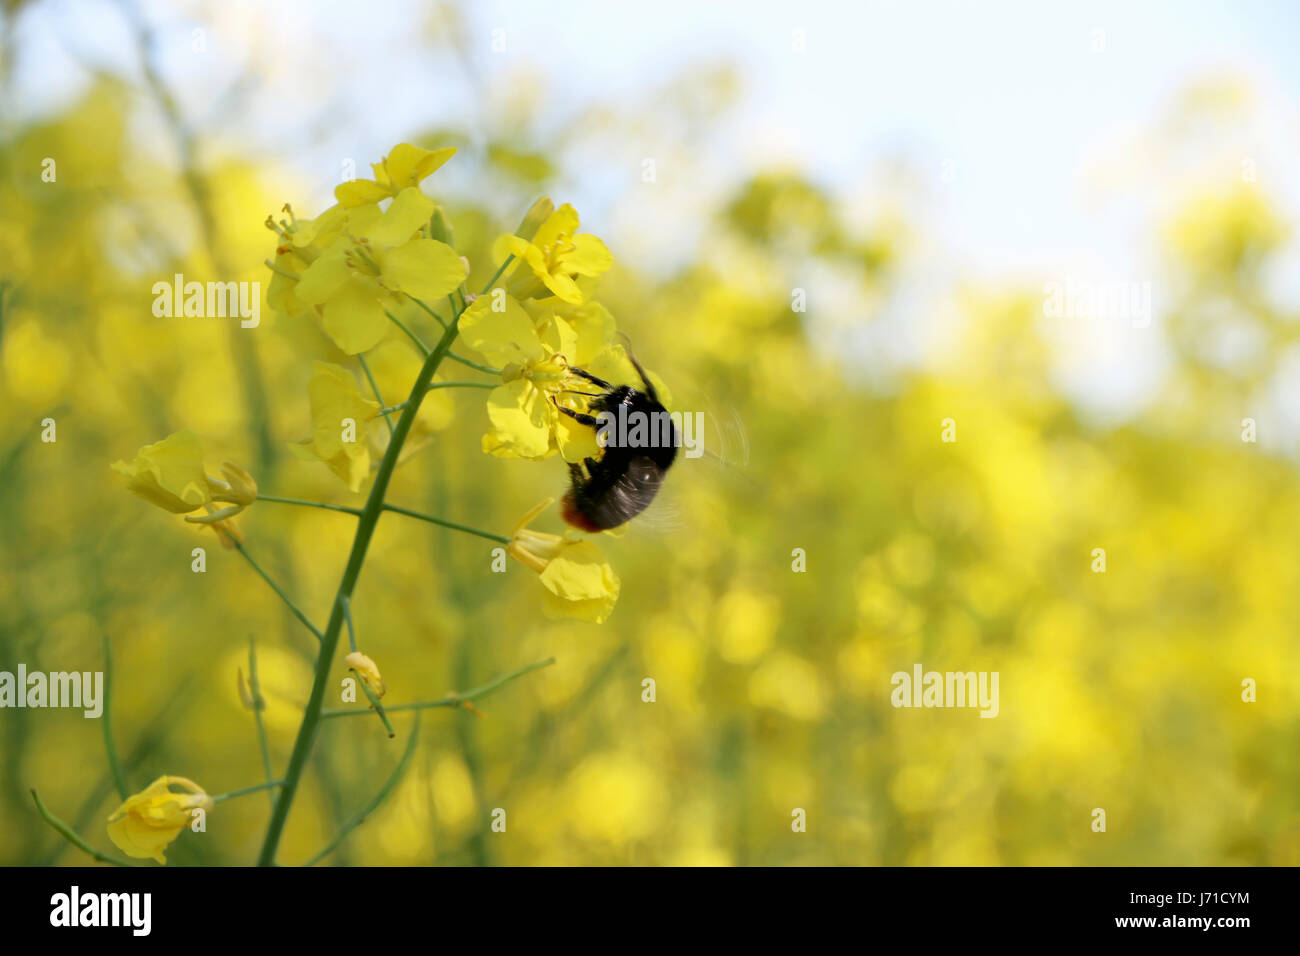 La pollinisation des abeilles champ de canola. Un dépoussiérage de fleurs en croissance Banque D'Images